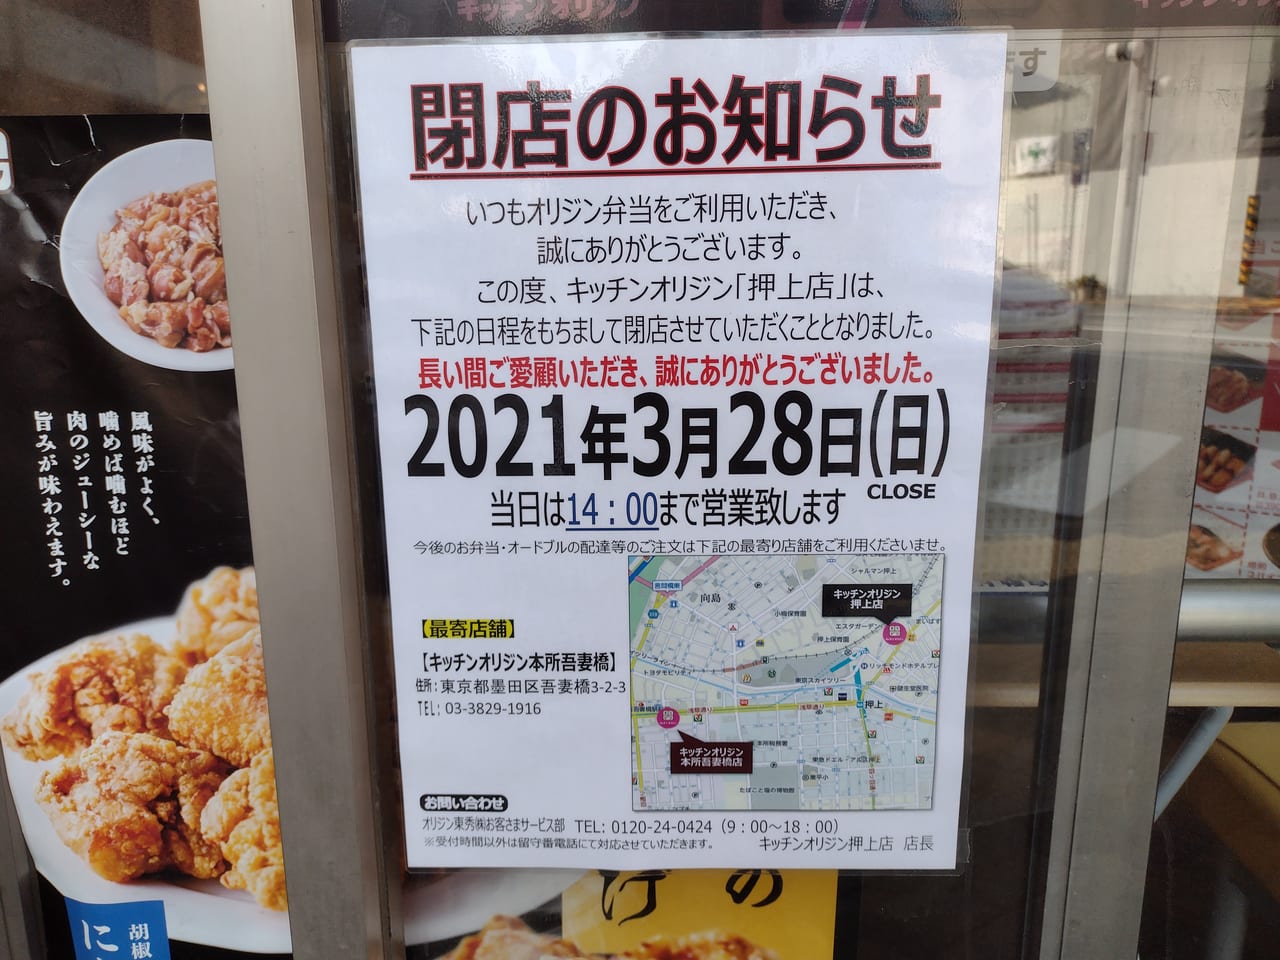 墨田区 キッチンオリジン押上店が21年3月28日をもって閉店してしまう事が分かりました 号外net 墨田区